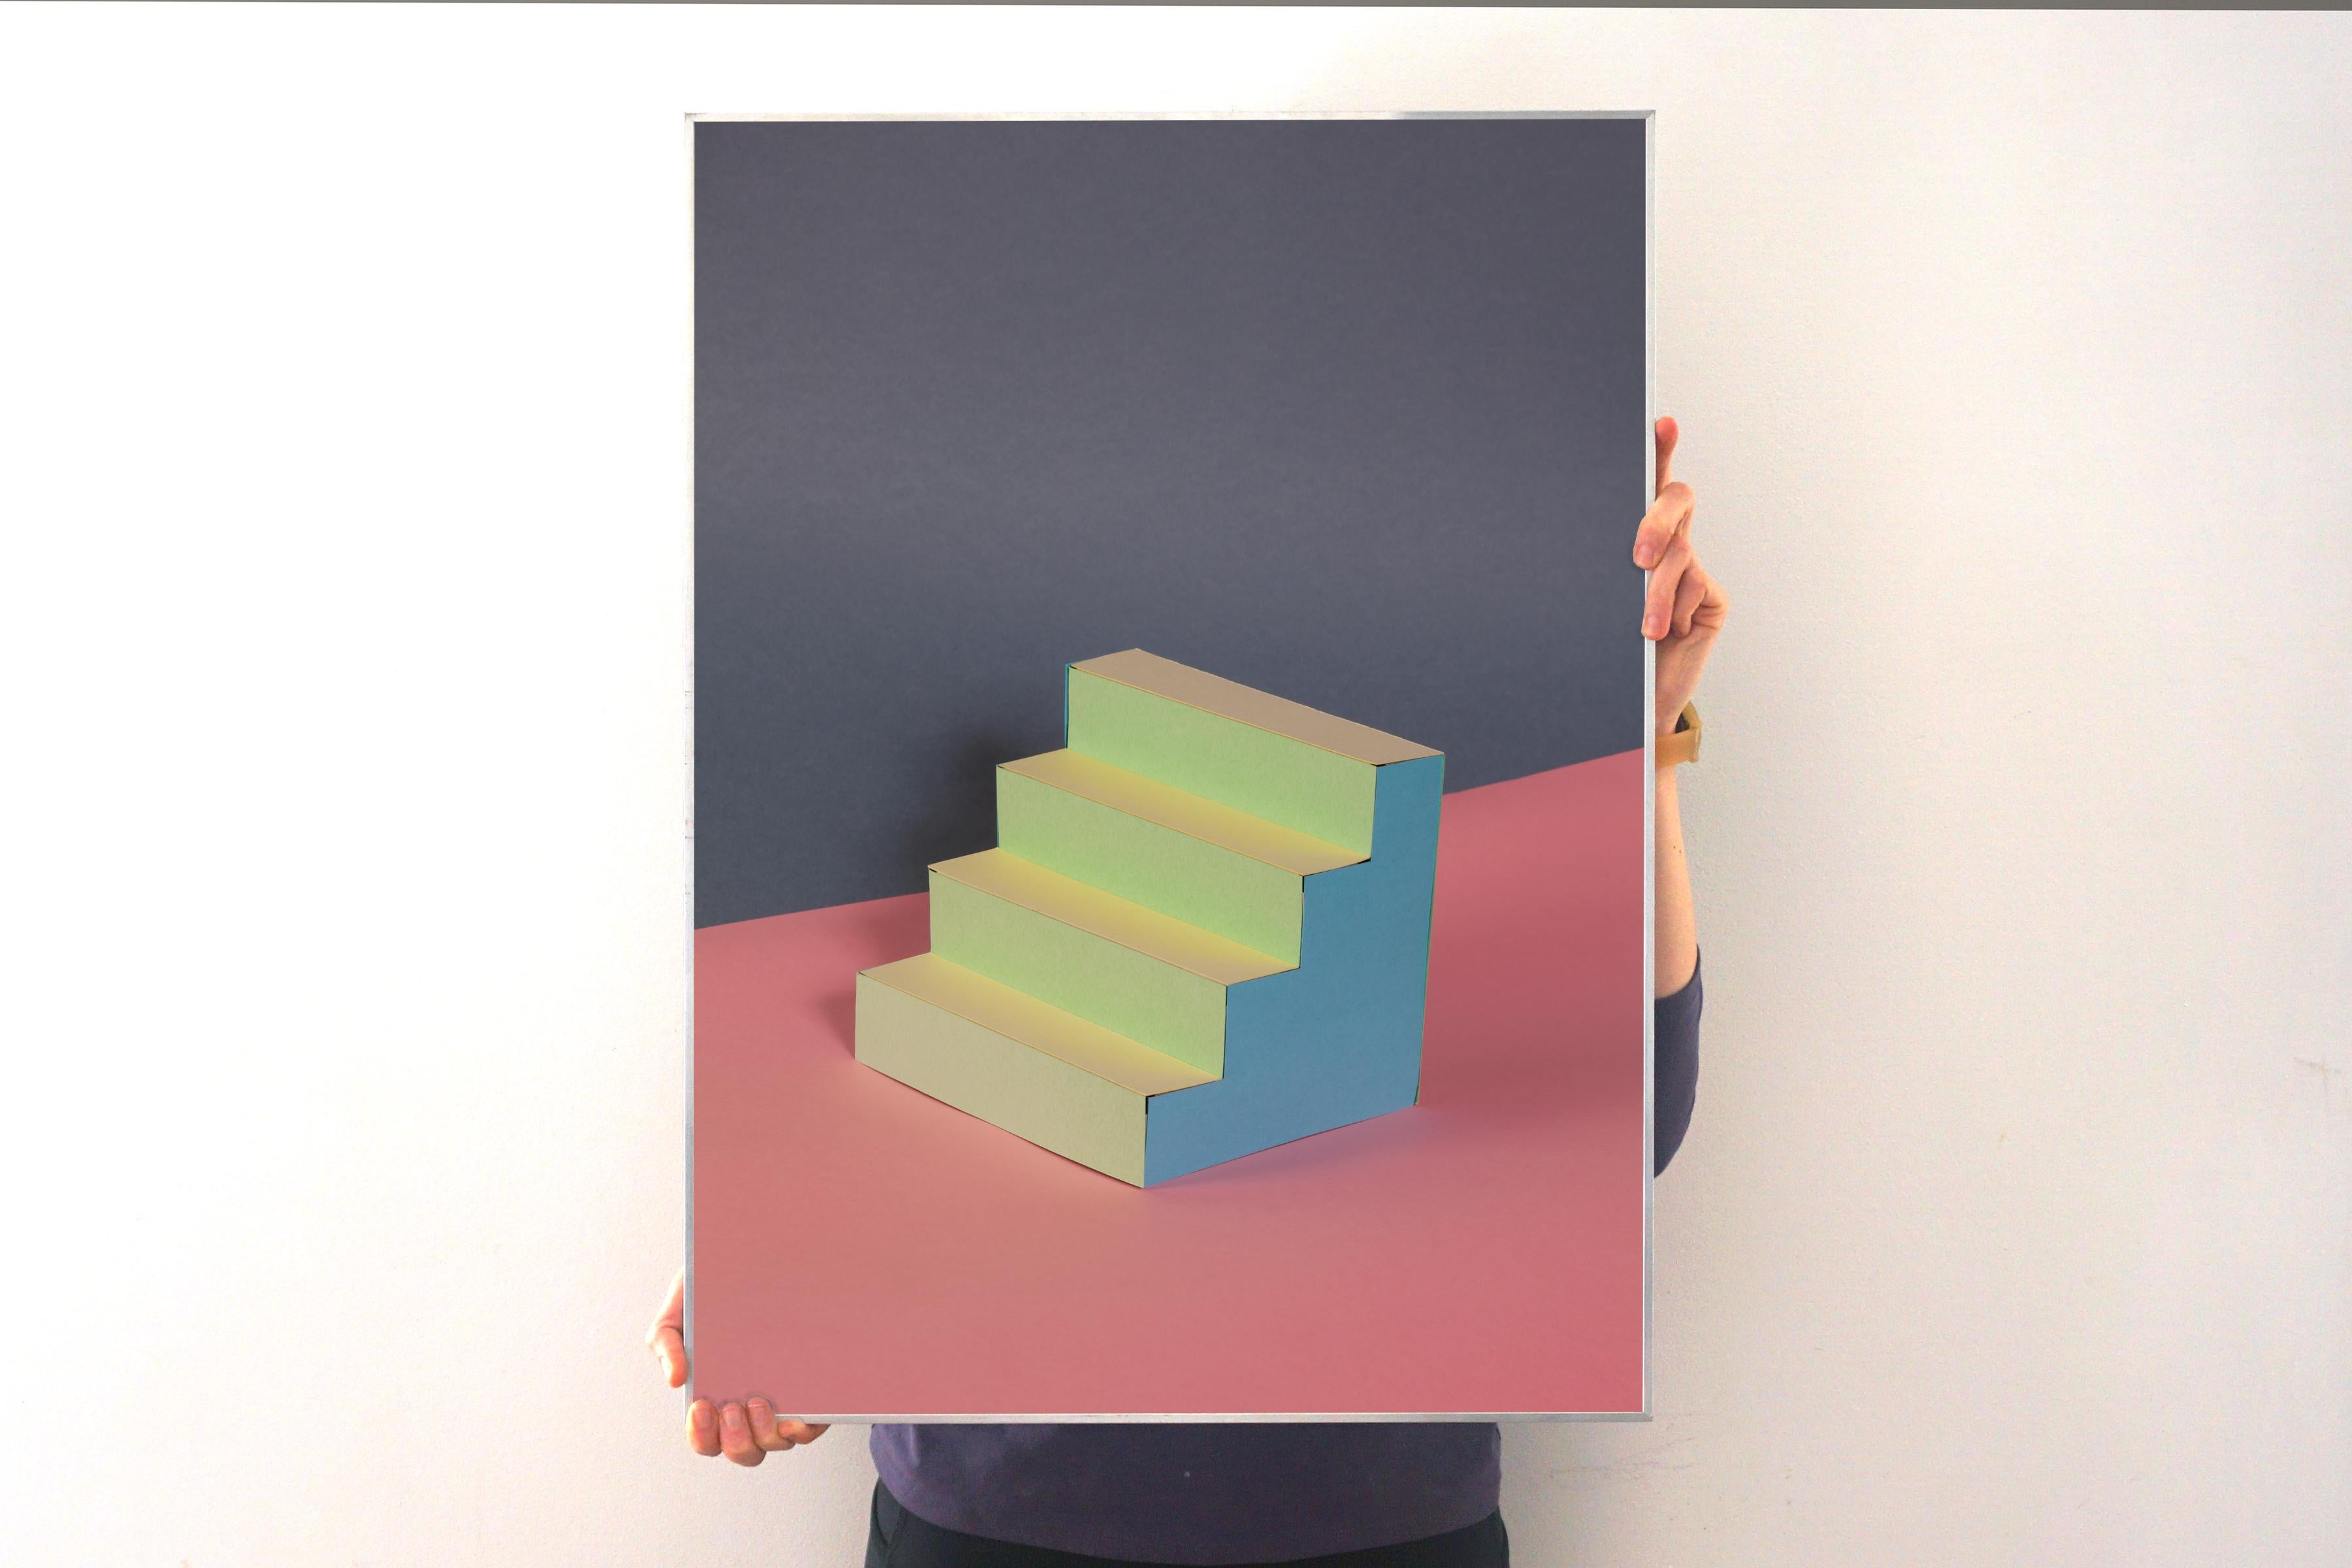 Architecture de Naif dans une palette de couleurs pastel, escalier contemporain, style Sol LeWitt - Print de Ryan Rivadeneyra